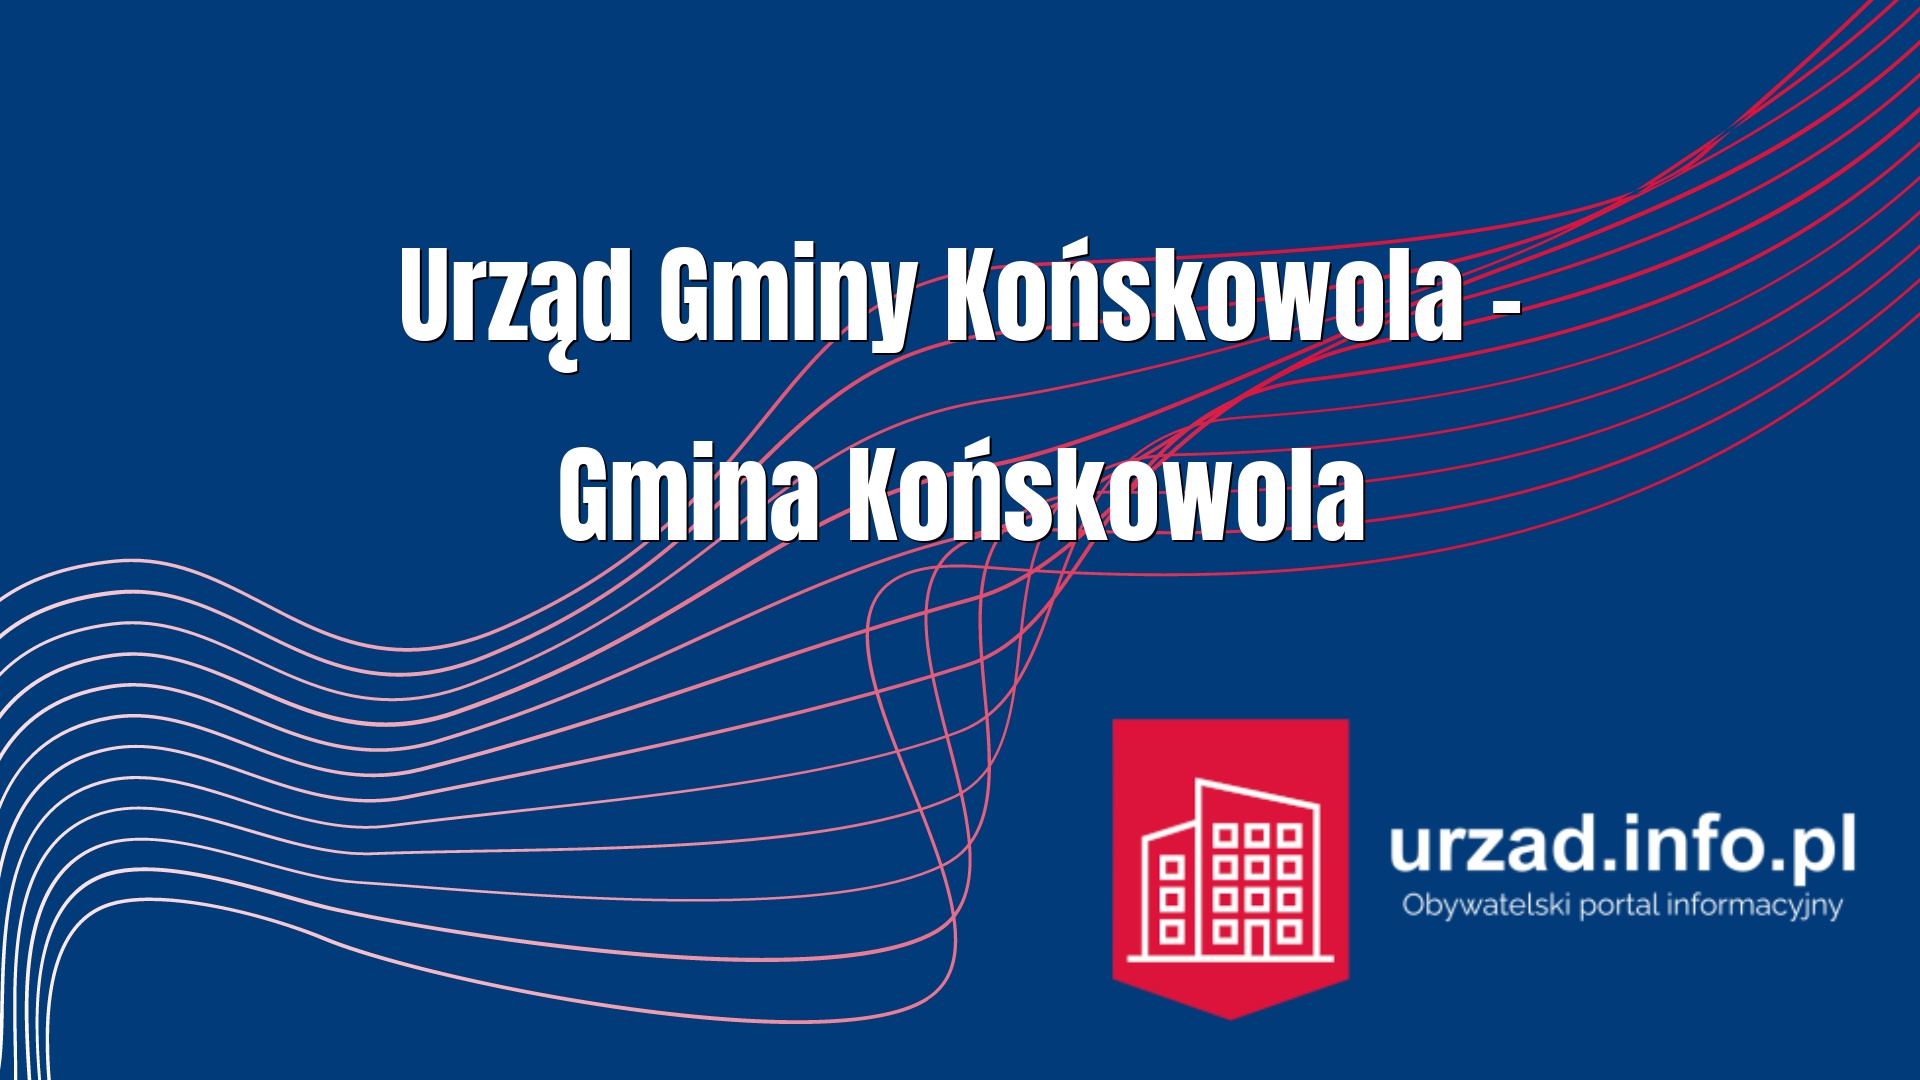 urz-d-gminy-ko-skowola-gmina-ko-skowola-urzad-info-pl